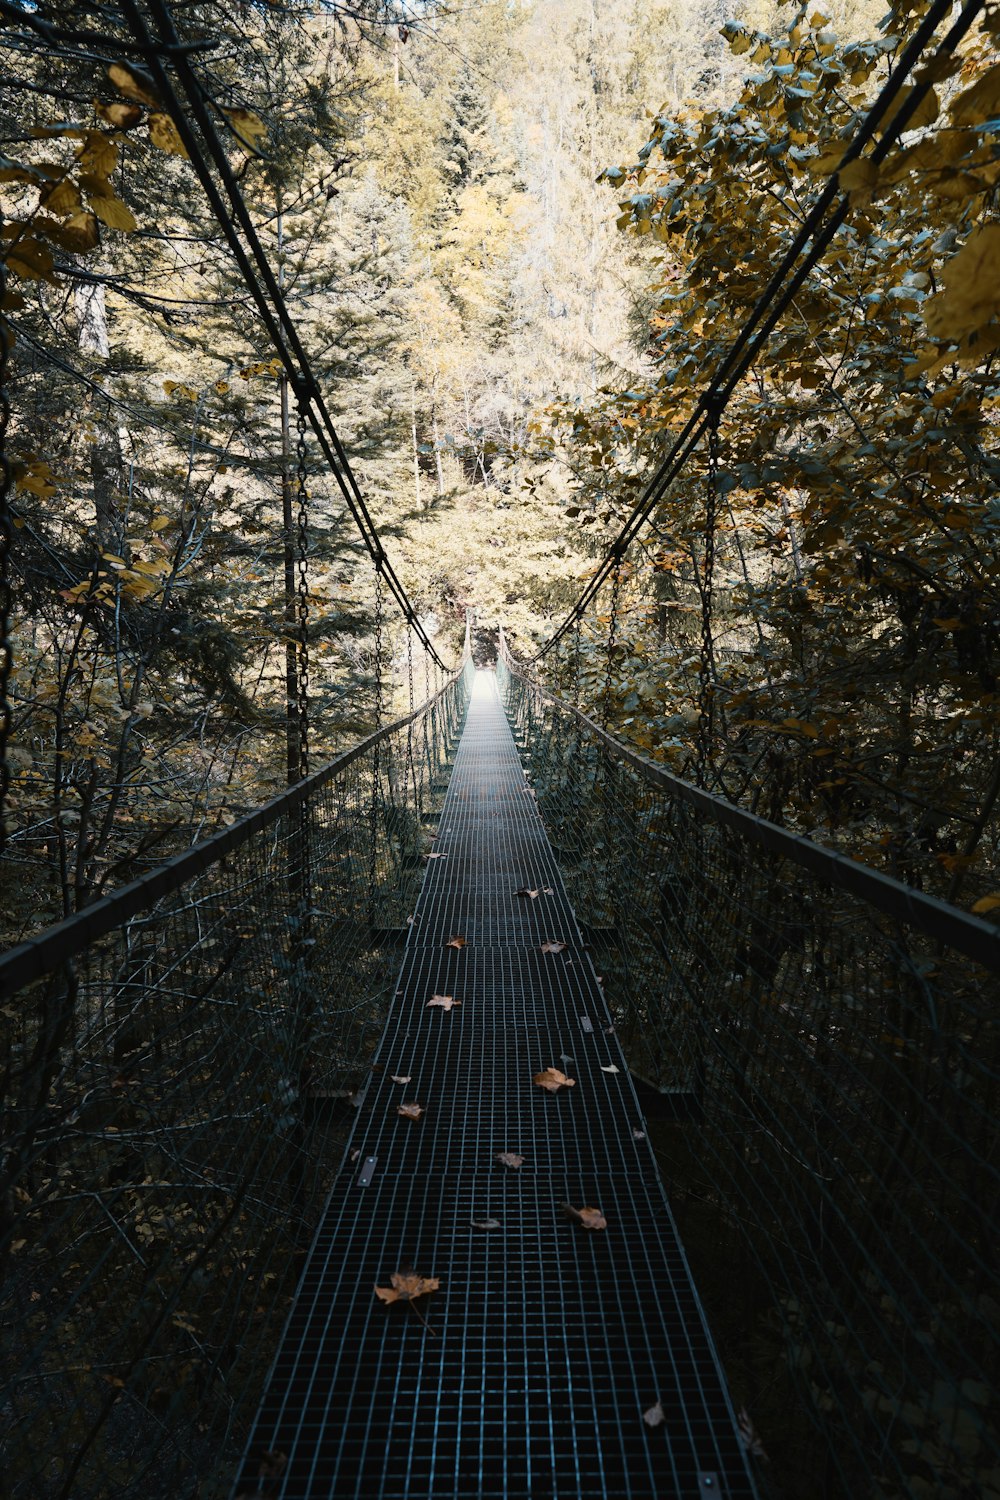 empty gray metal hanging bridge between trees